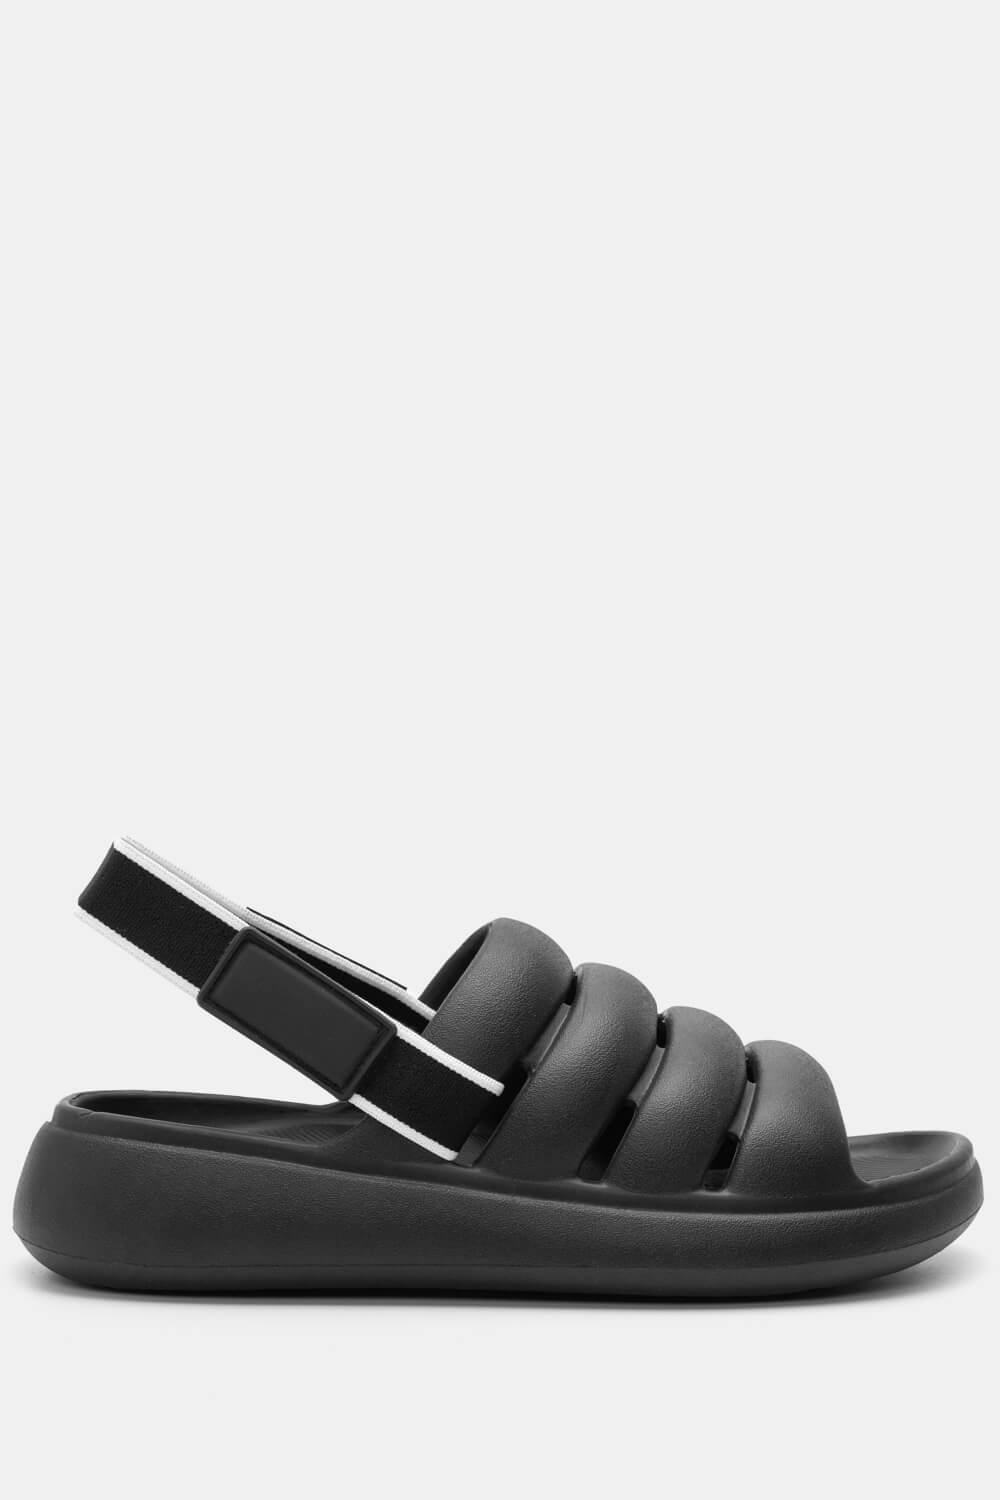 ΠΑΠΟΥΤΣΙΑ > Jelly Shoes Rubber Sandals - Μαύρο